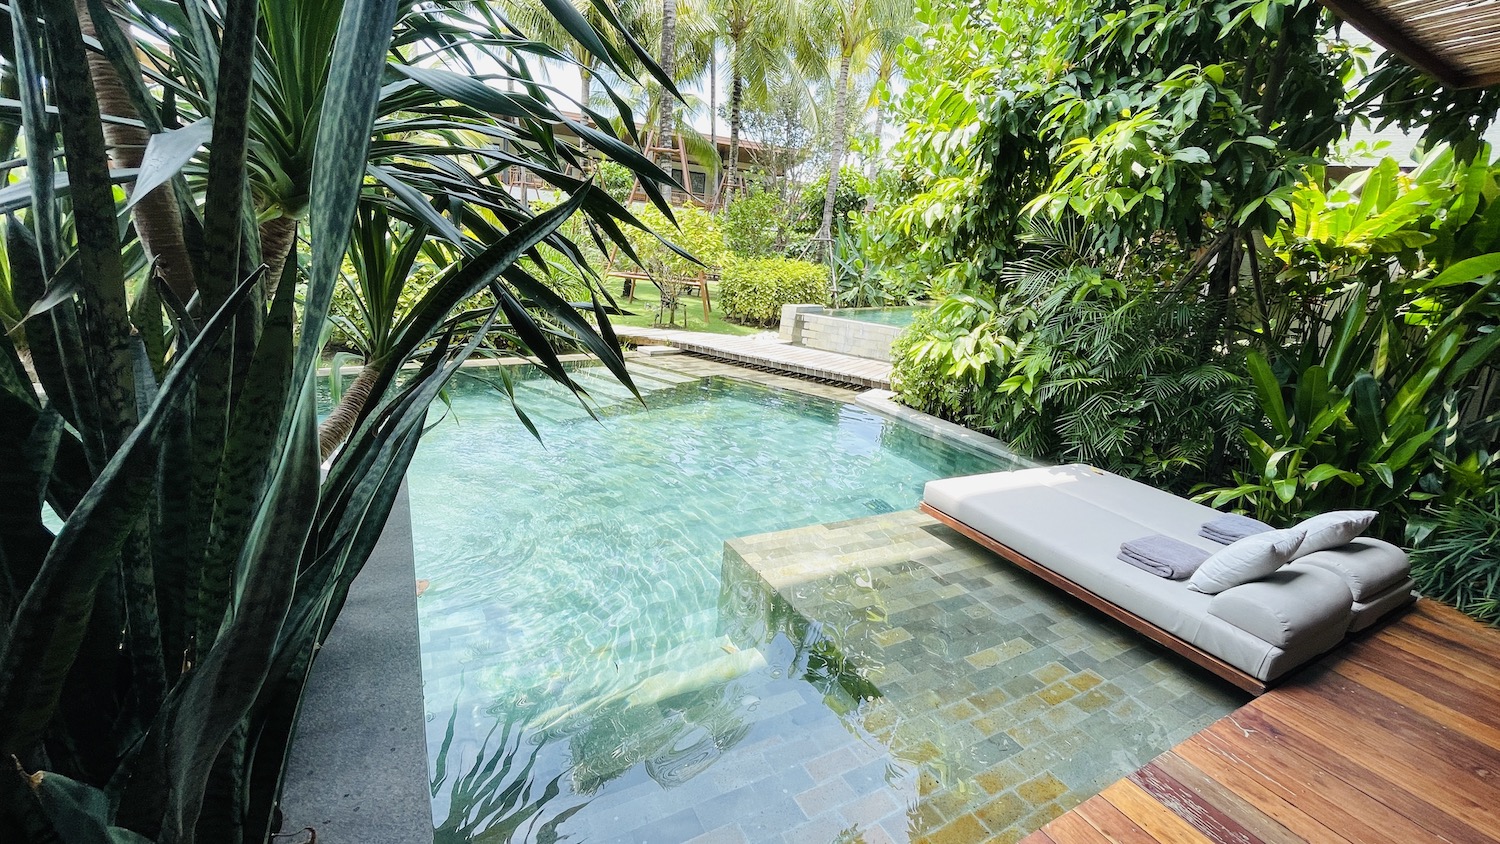 Directe toegang tot een van de zwembaden vanuit je kamer. Need we say more?